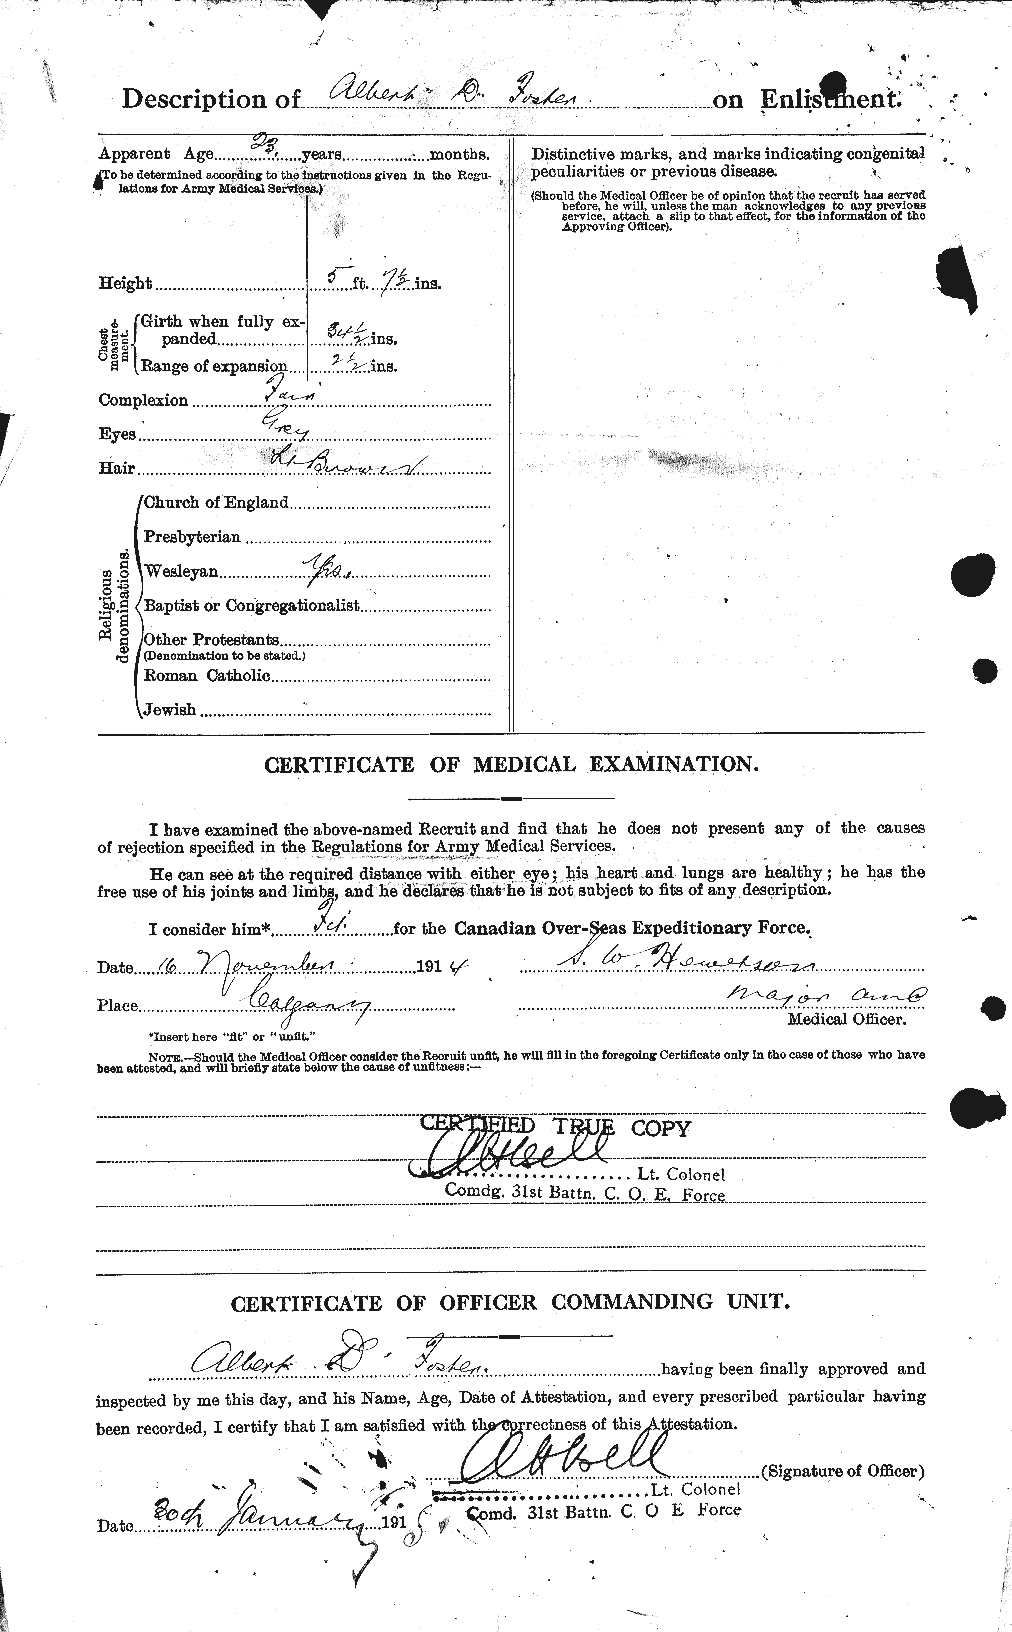 Dossiers du Personnel de la Première Guerre mondiale - CEC 330433b